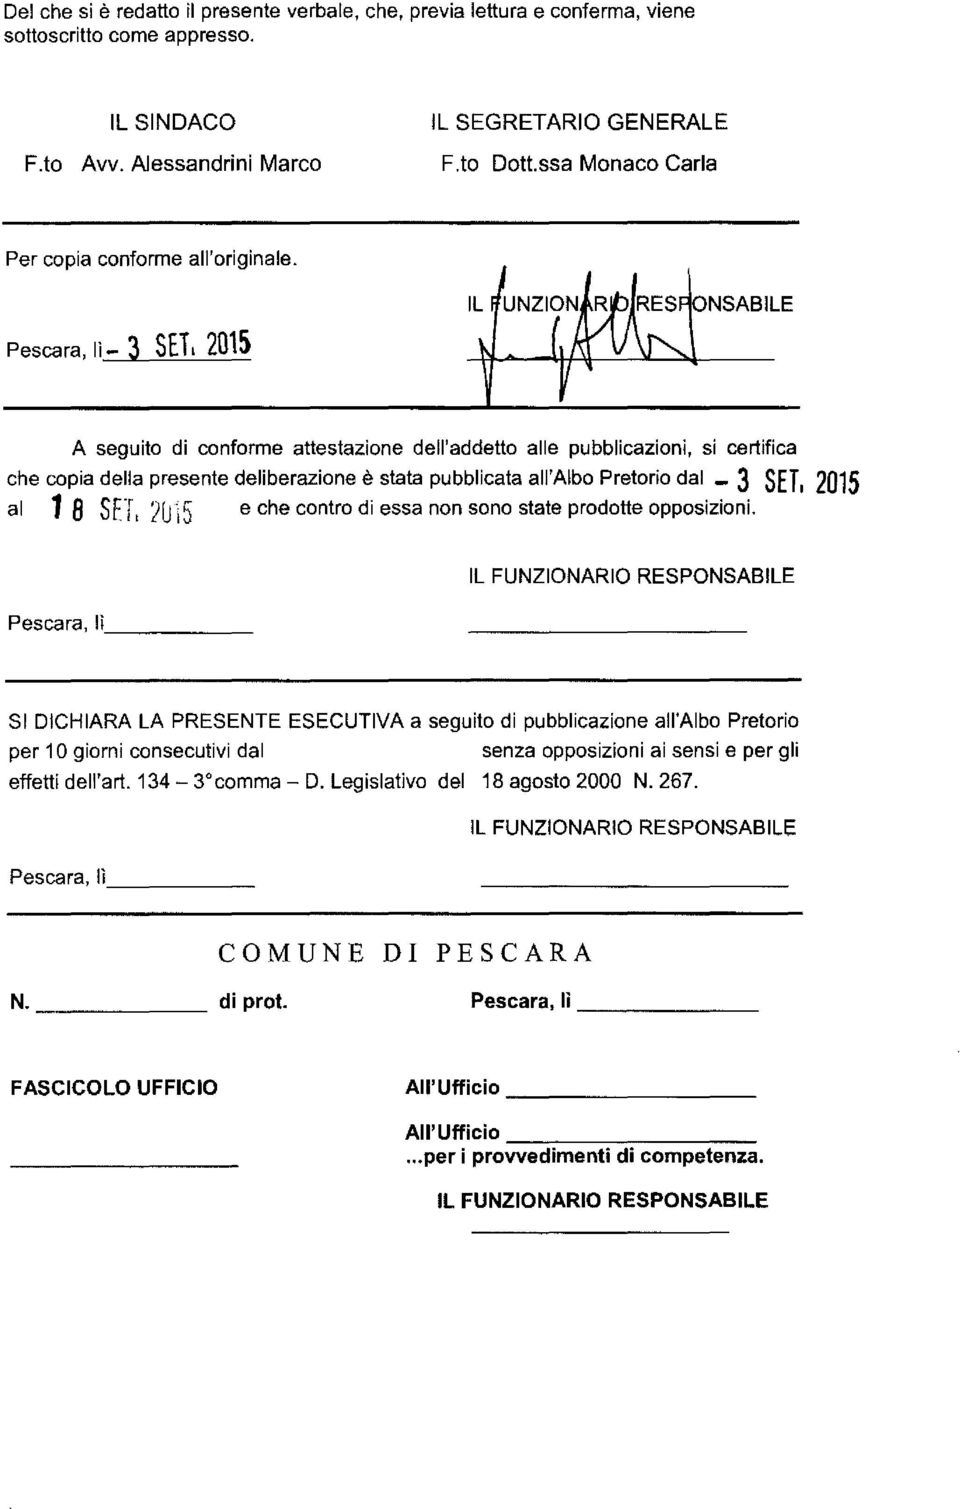 Pescara, lì - 3 SETL 2015 A seguito di conforme attestazione dell'addetto alle pubblicazioni, si certifica che copia della presente deliberazione è stata pubblicata all'albo Pretorio dal - 3 SET,